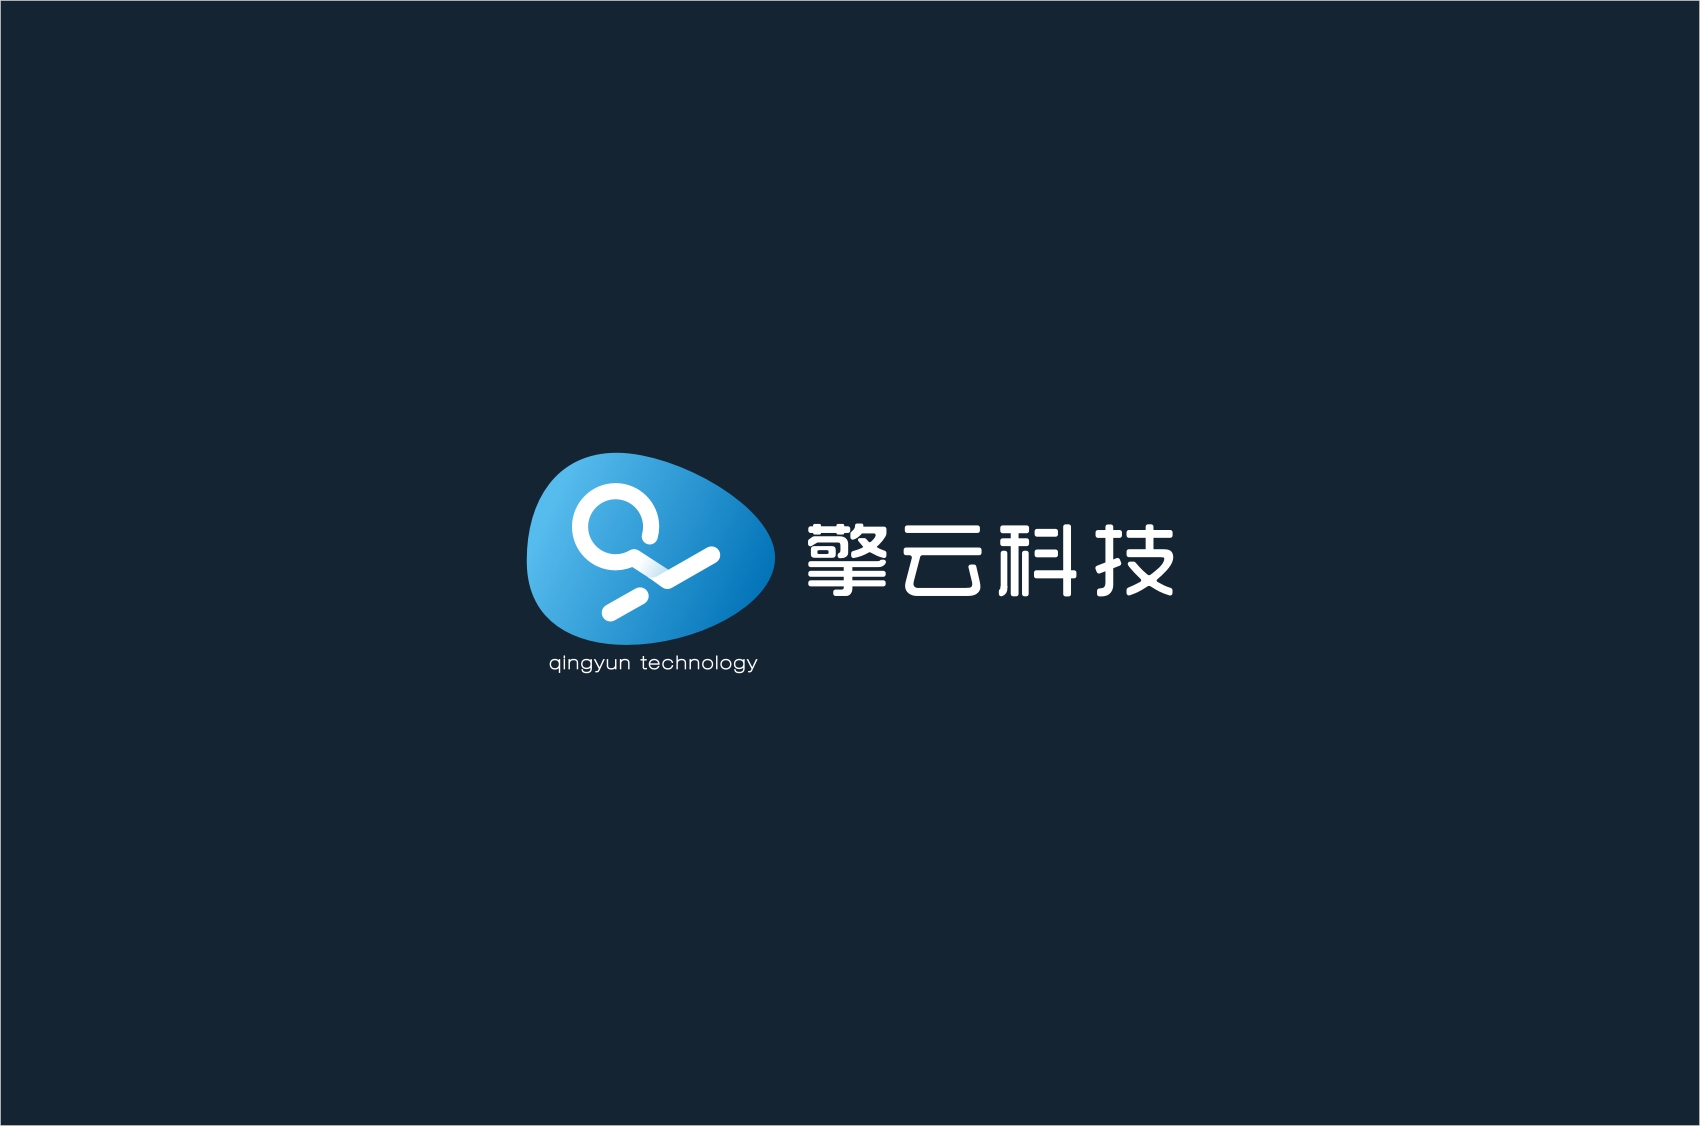 擎云科技品牌logo形象方案-标志-平面-设计作品-中国